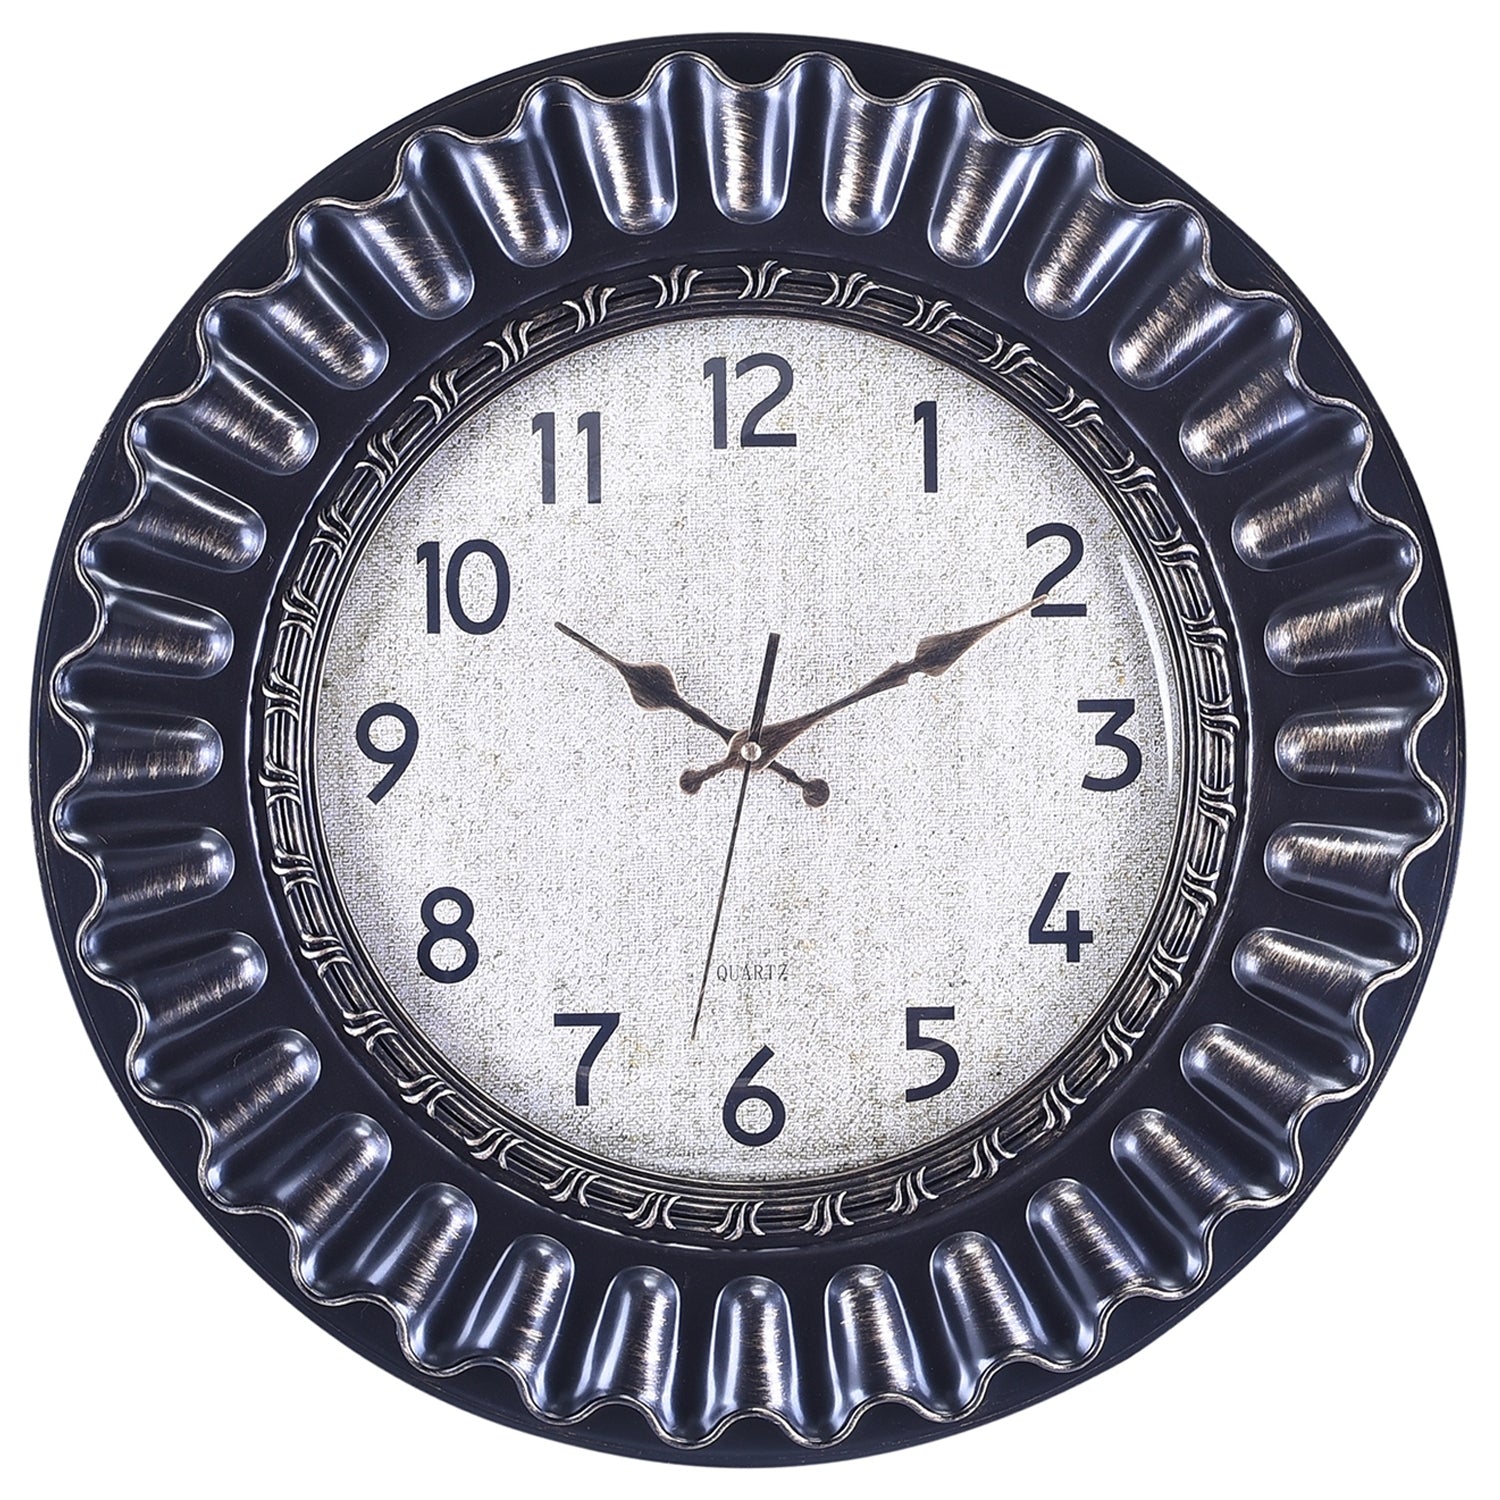 Premium Antique Design Analog Wall Clock 40